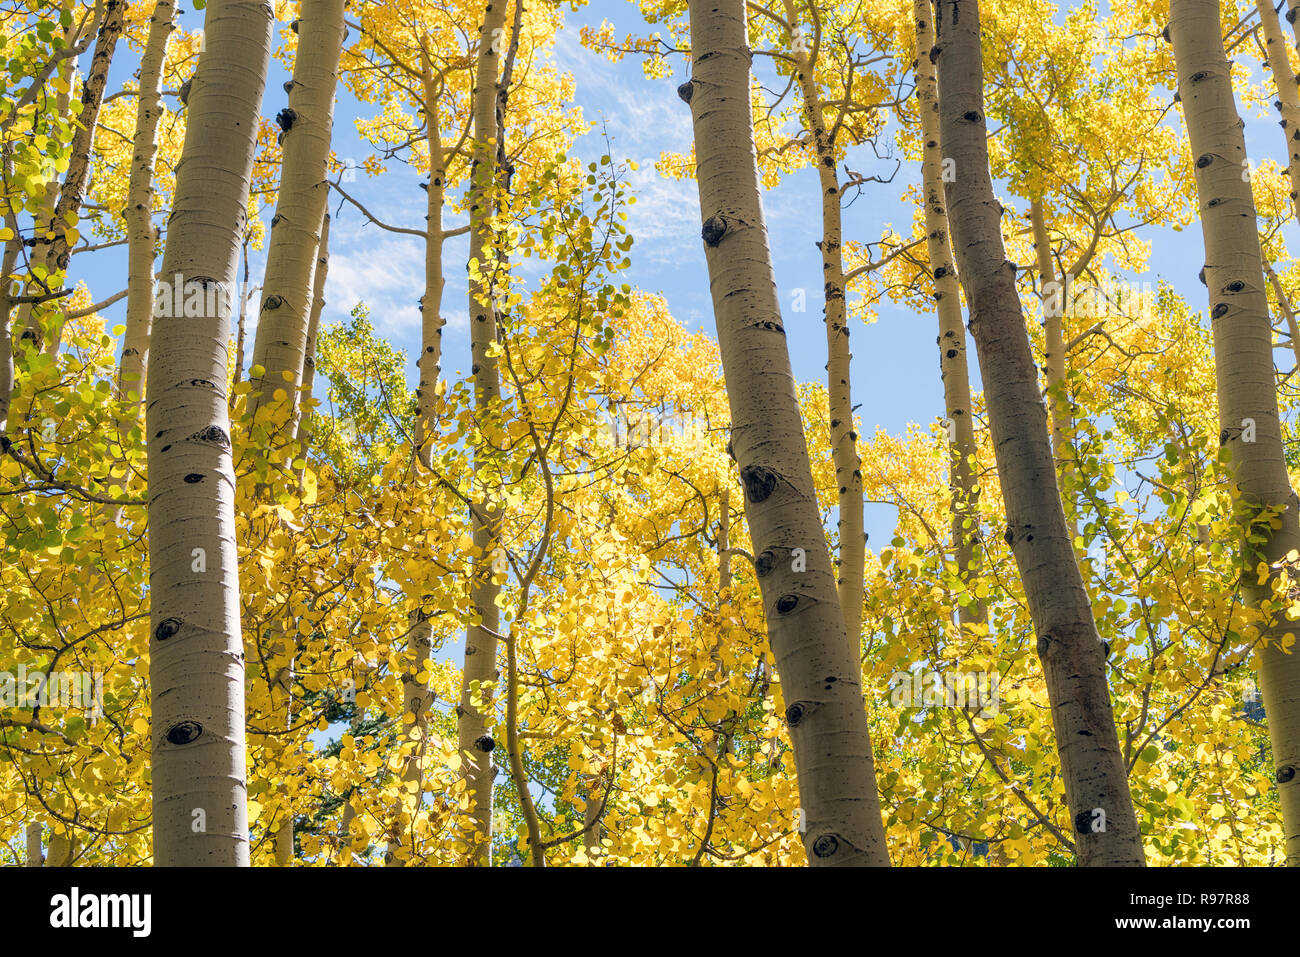 Yellow Aspen Trees showing Autumn Foliage Change, Autumn Season Trees Stock Photo